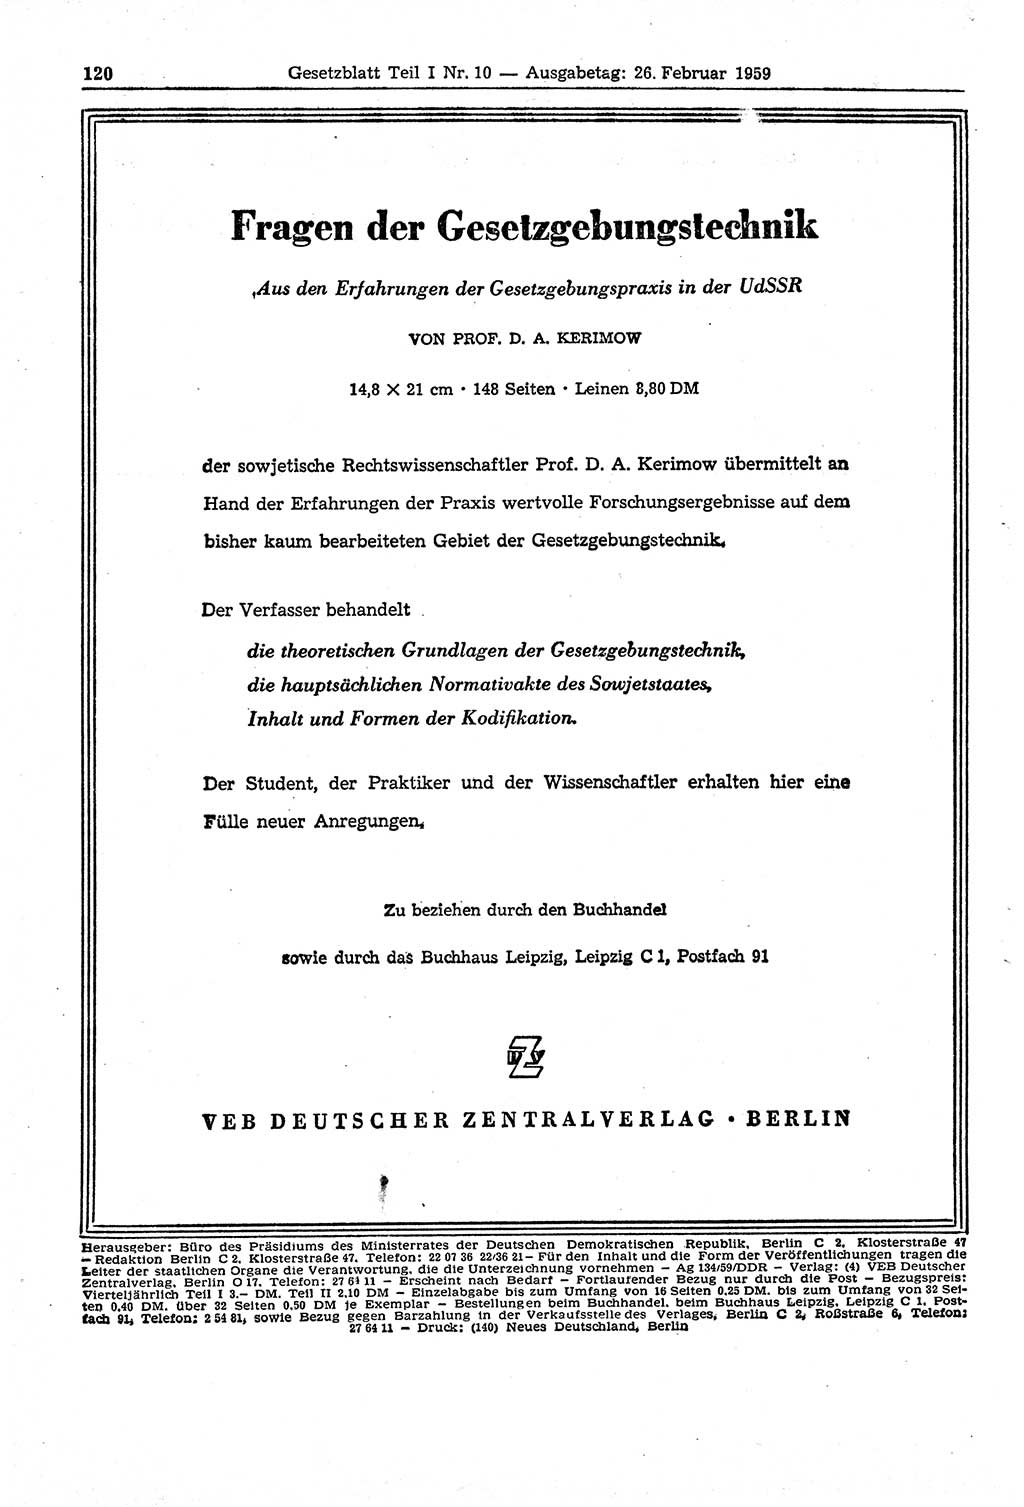 Gesetzblatt (GBl.) der Deutschen Demokratischen Republik (DDR) Teil Ⅰ 1959, Seite 120 (GBl. DDR Ⅰ 1959, S. 120)